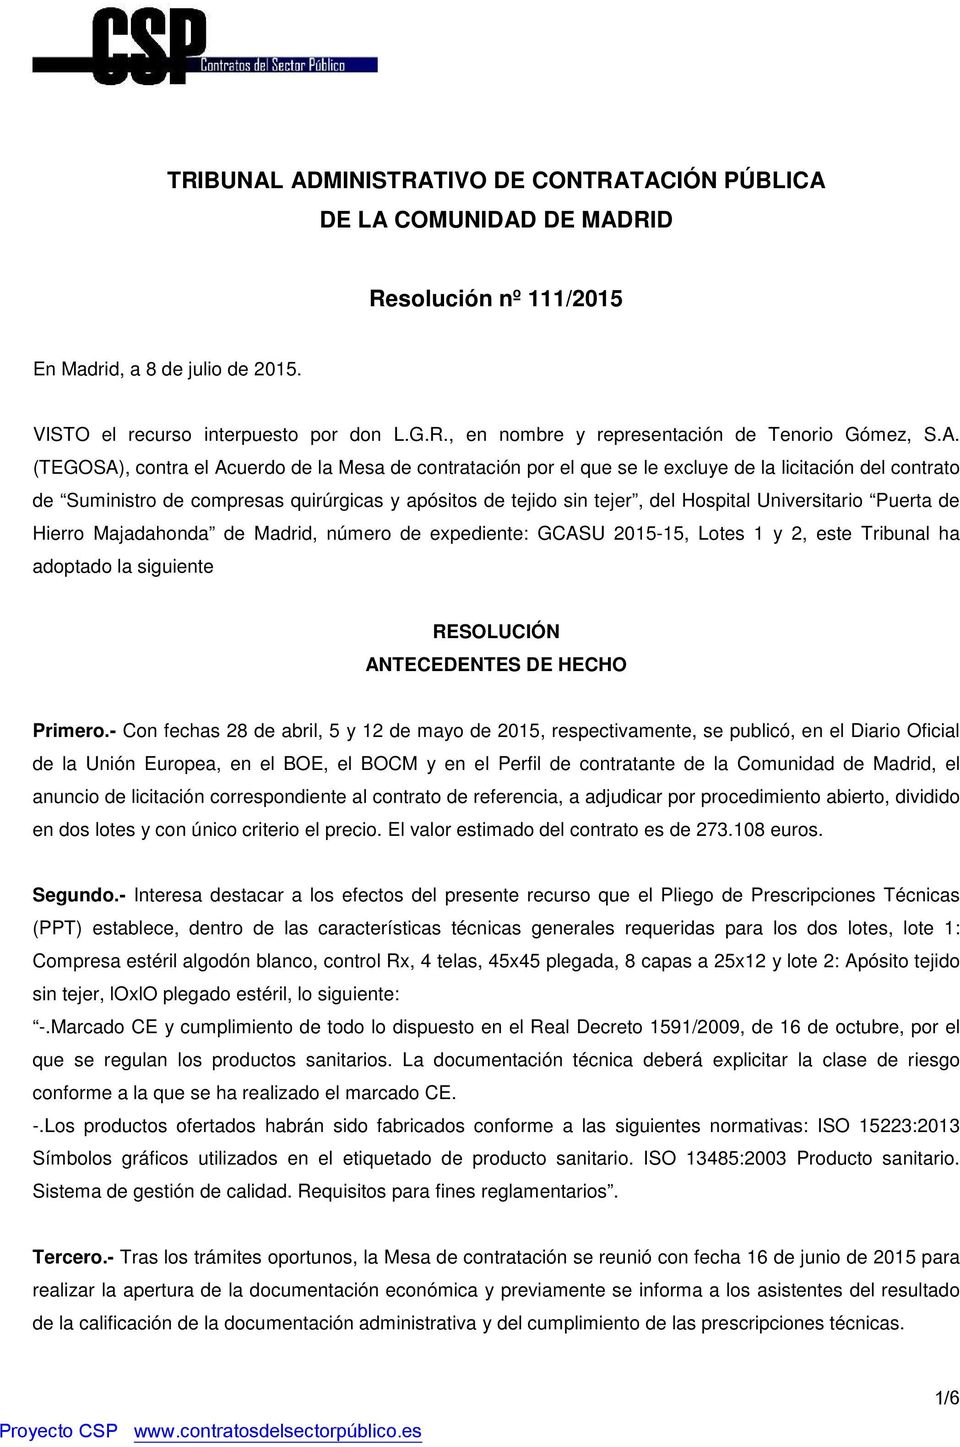 Universitario Puerta de Hierro Majadahonda de Madrid, número de expediente: GCASU 2015-15, Lotes 1 y 2, este Tribunal ha adoptado la siguiente RESOLUCIÓN ANTECEDENTES DE HECHO Primero.